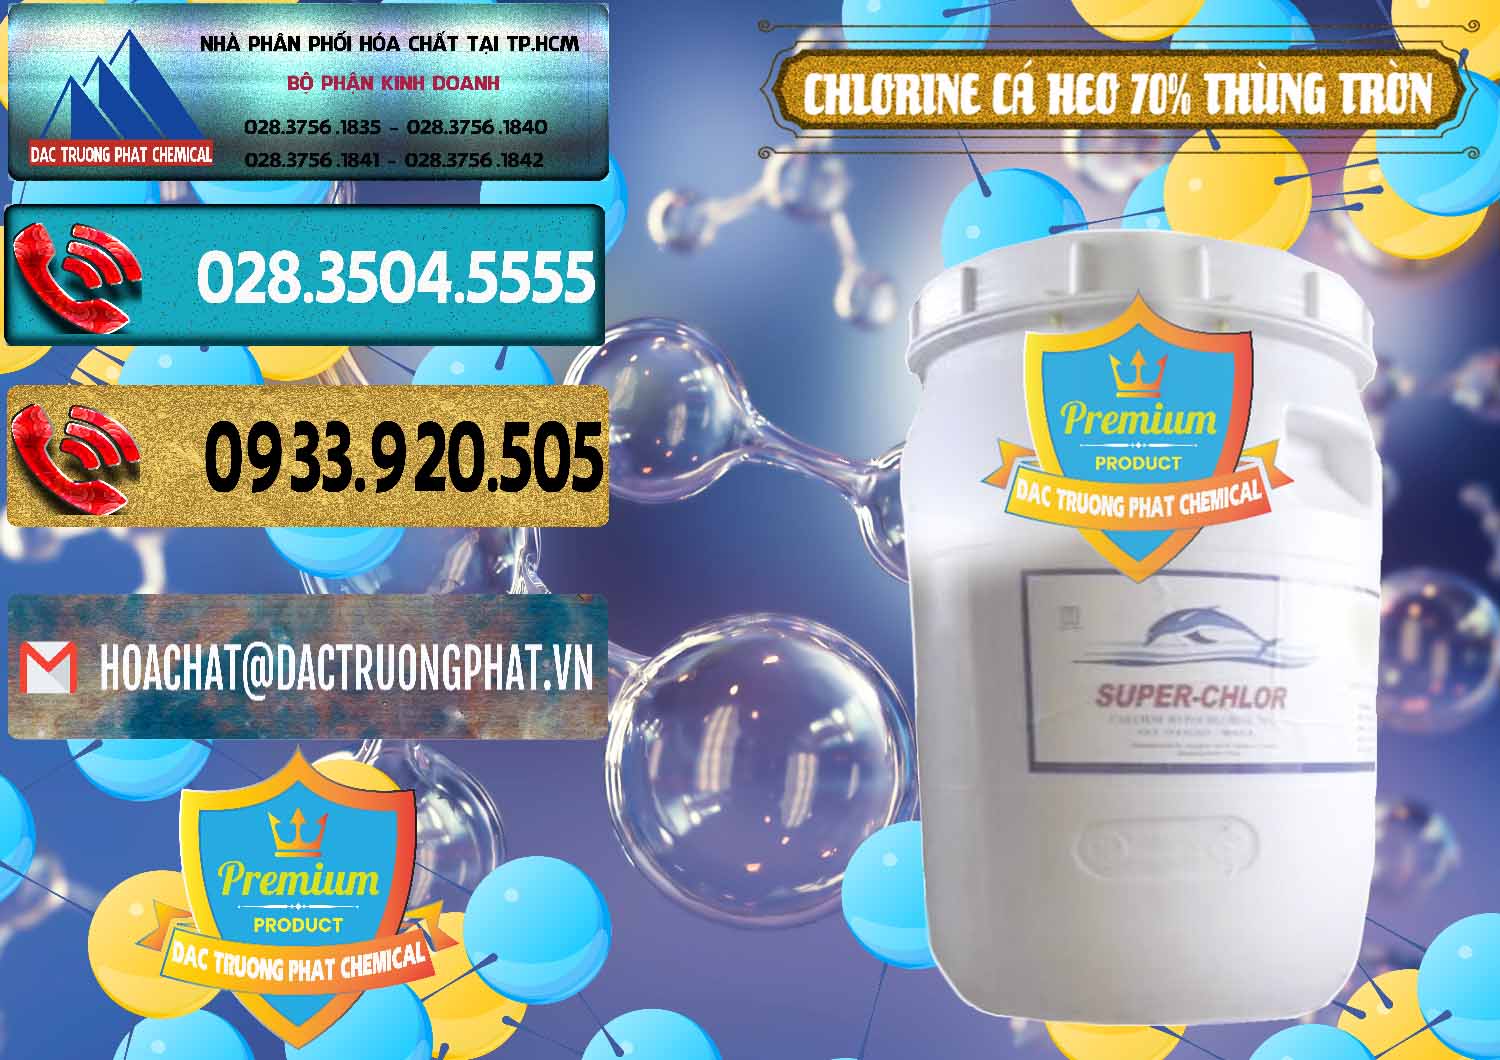 Nơi chuyên bán & phân phối Clorin - Chlorine Cá Heo 70% Super Chlor Thùng Tròn Nắp Trắng Trung Quốc China - 0239 - Đơn vị cung cấp ( phân phối ) hóa chất tại TP.HCM - hoachatdetnhuom.com